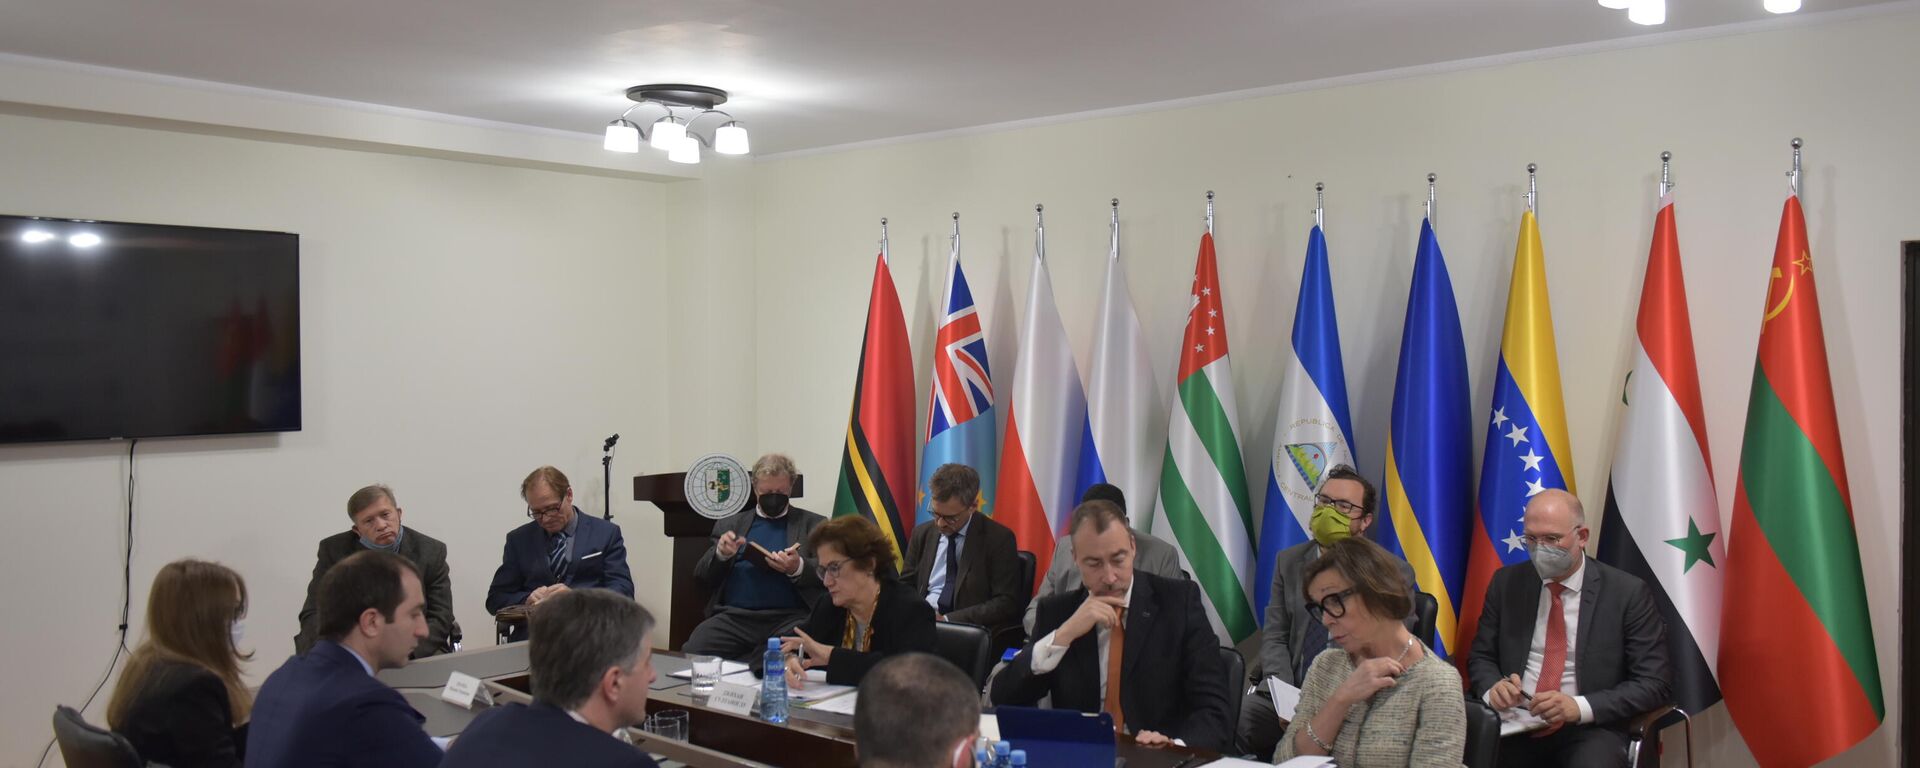 Сопредседатели Женевских дискуссий провели встречу в МИД Абхазии  - Sputnik Абхазия, 1920, 16.11.2021